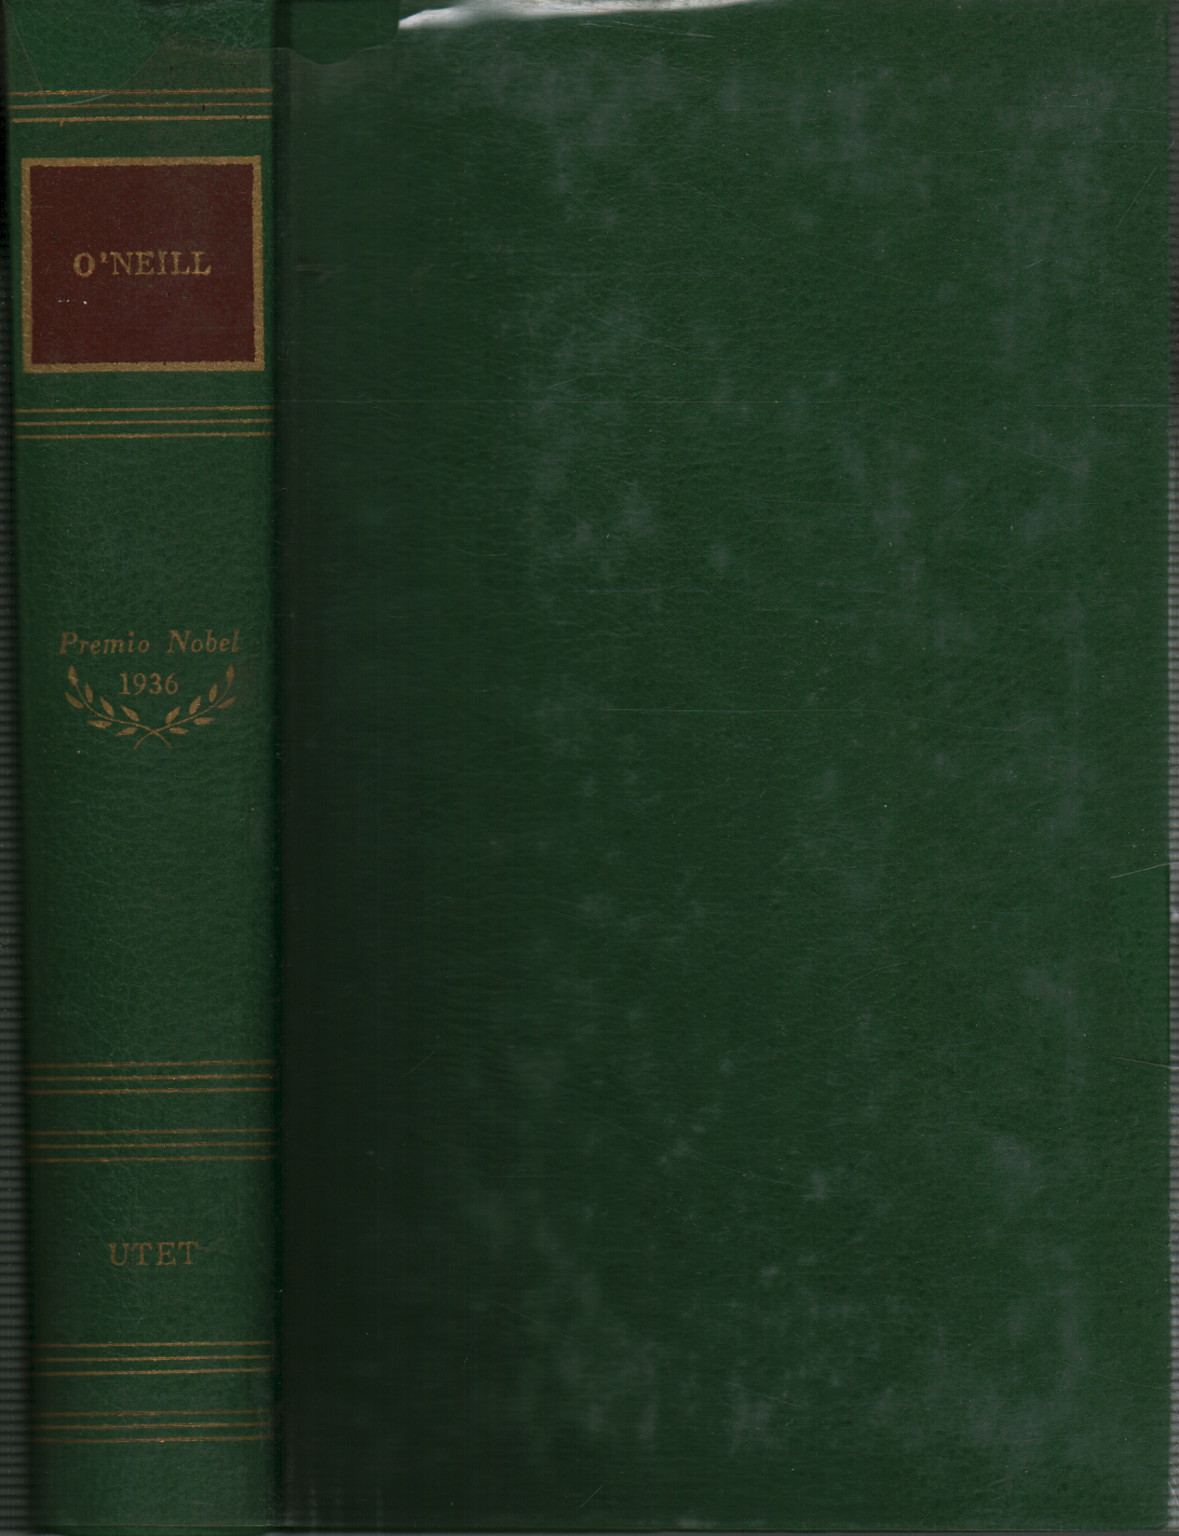 Die Werke von Eugene O'Neill, s.a.